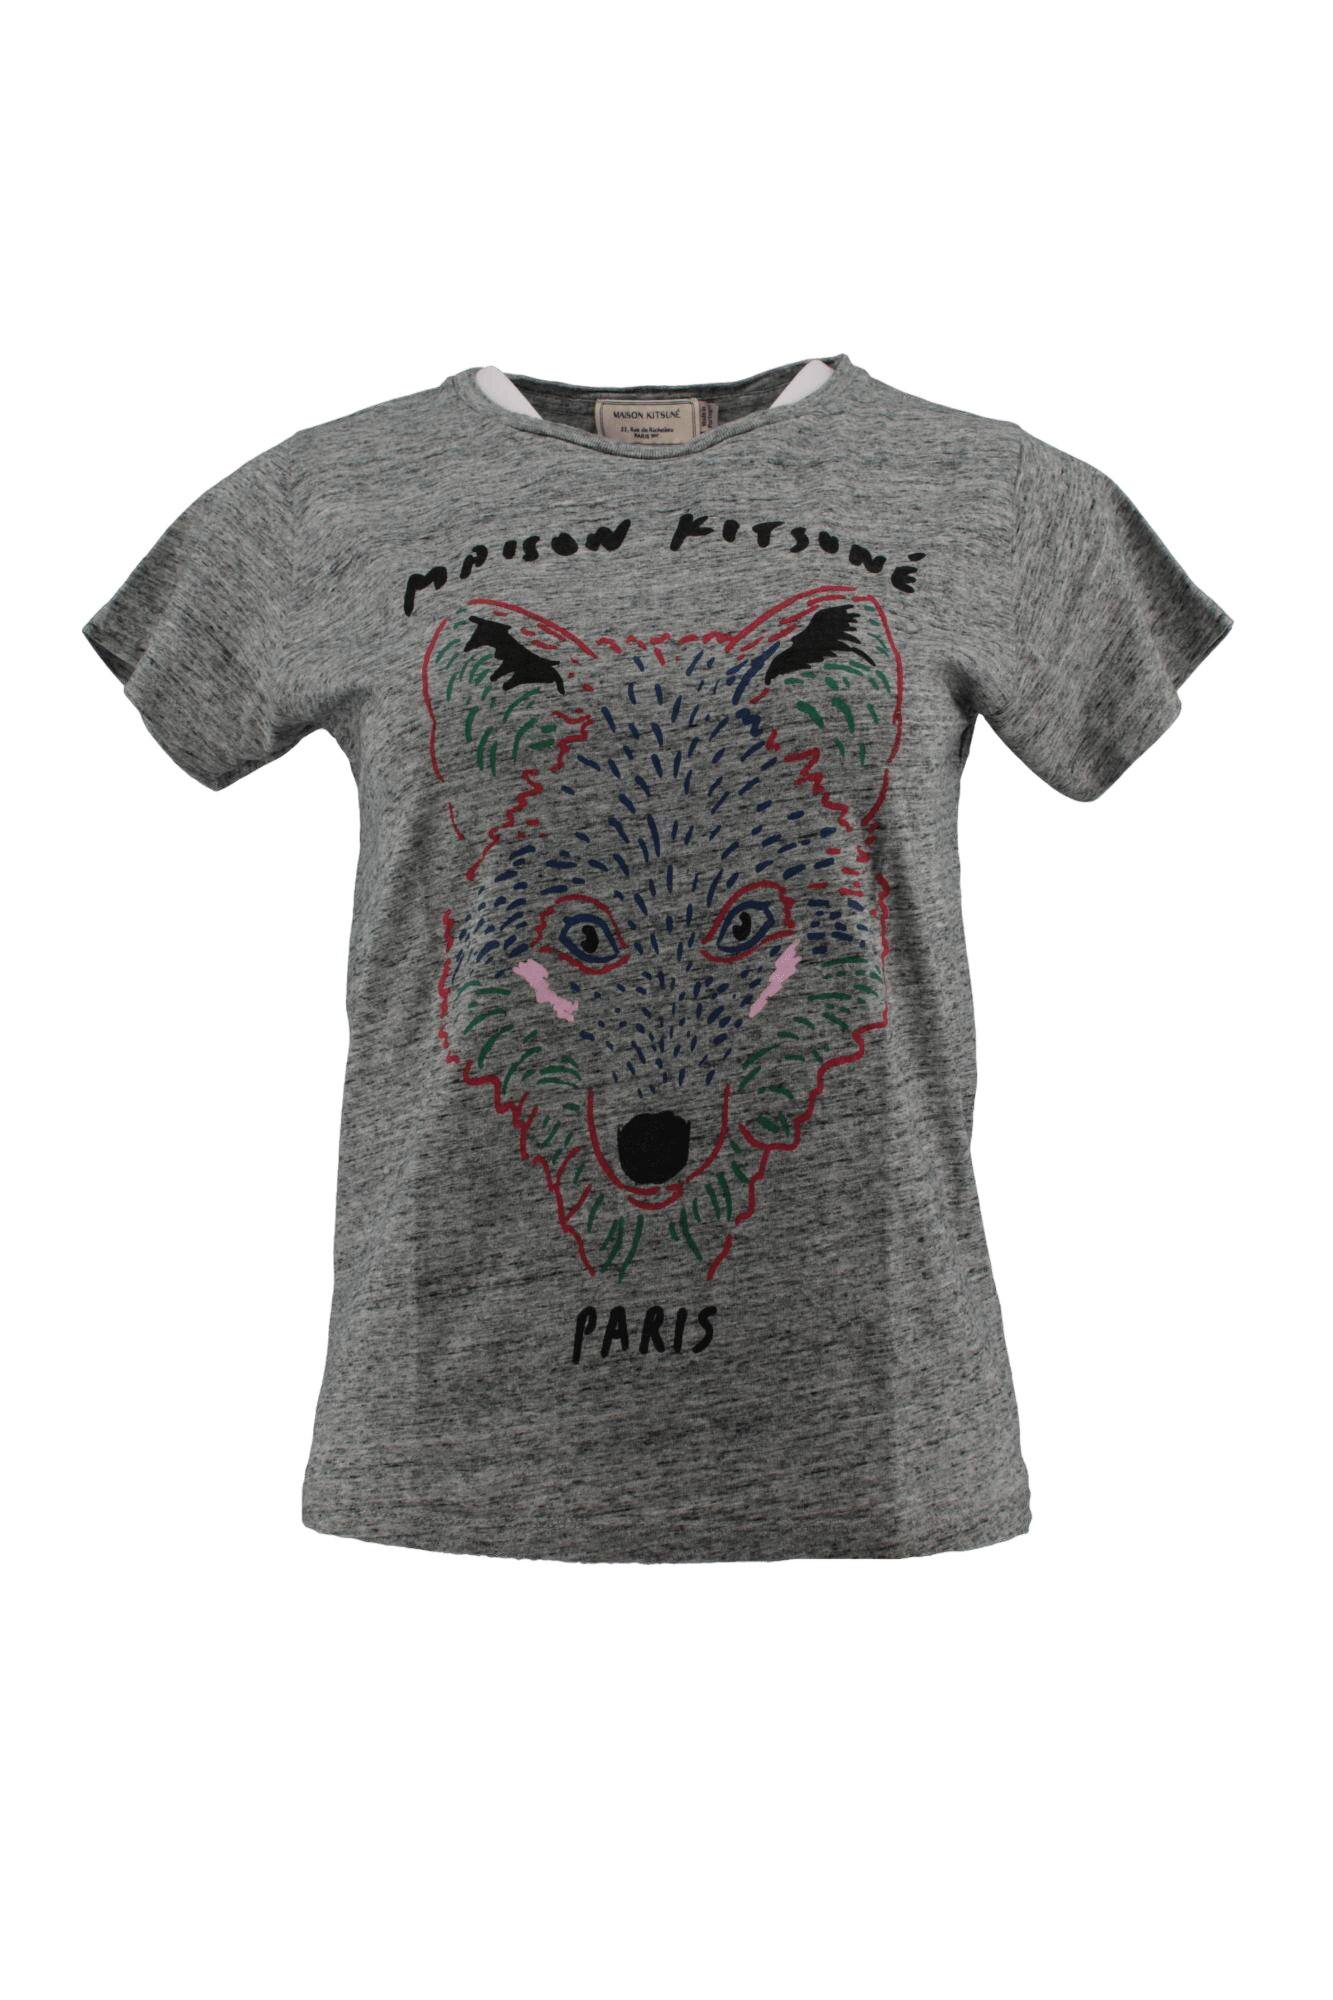 T-shirt Femme Loup Vuitton - La Boutique du Loup